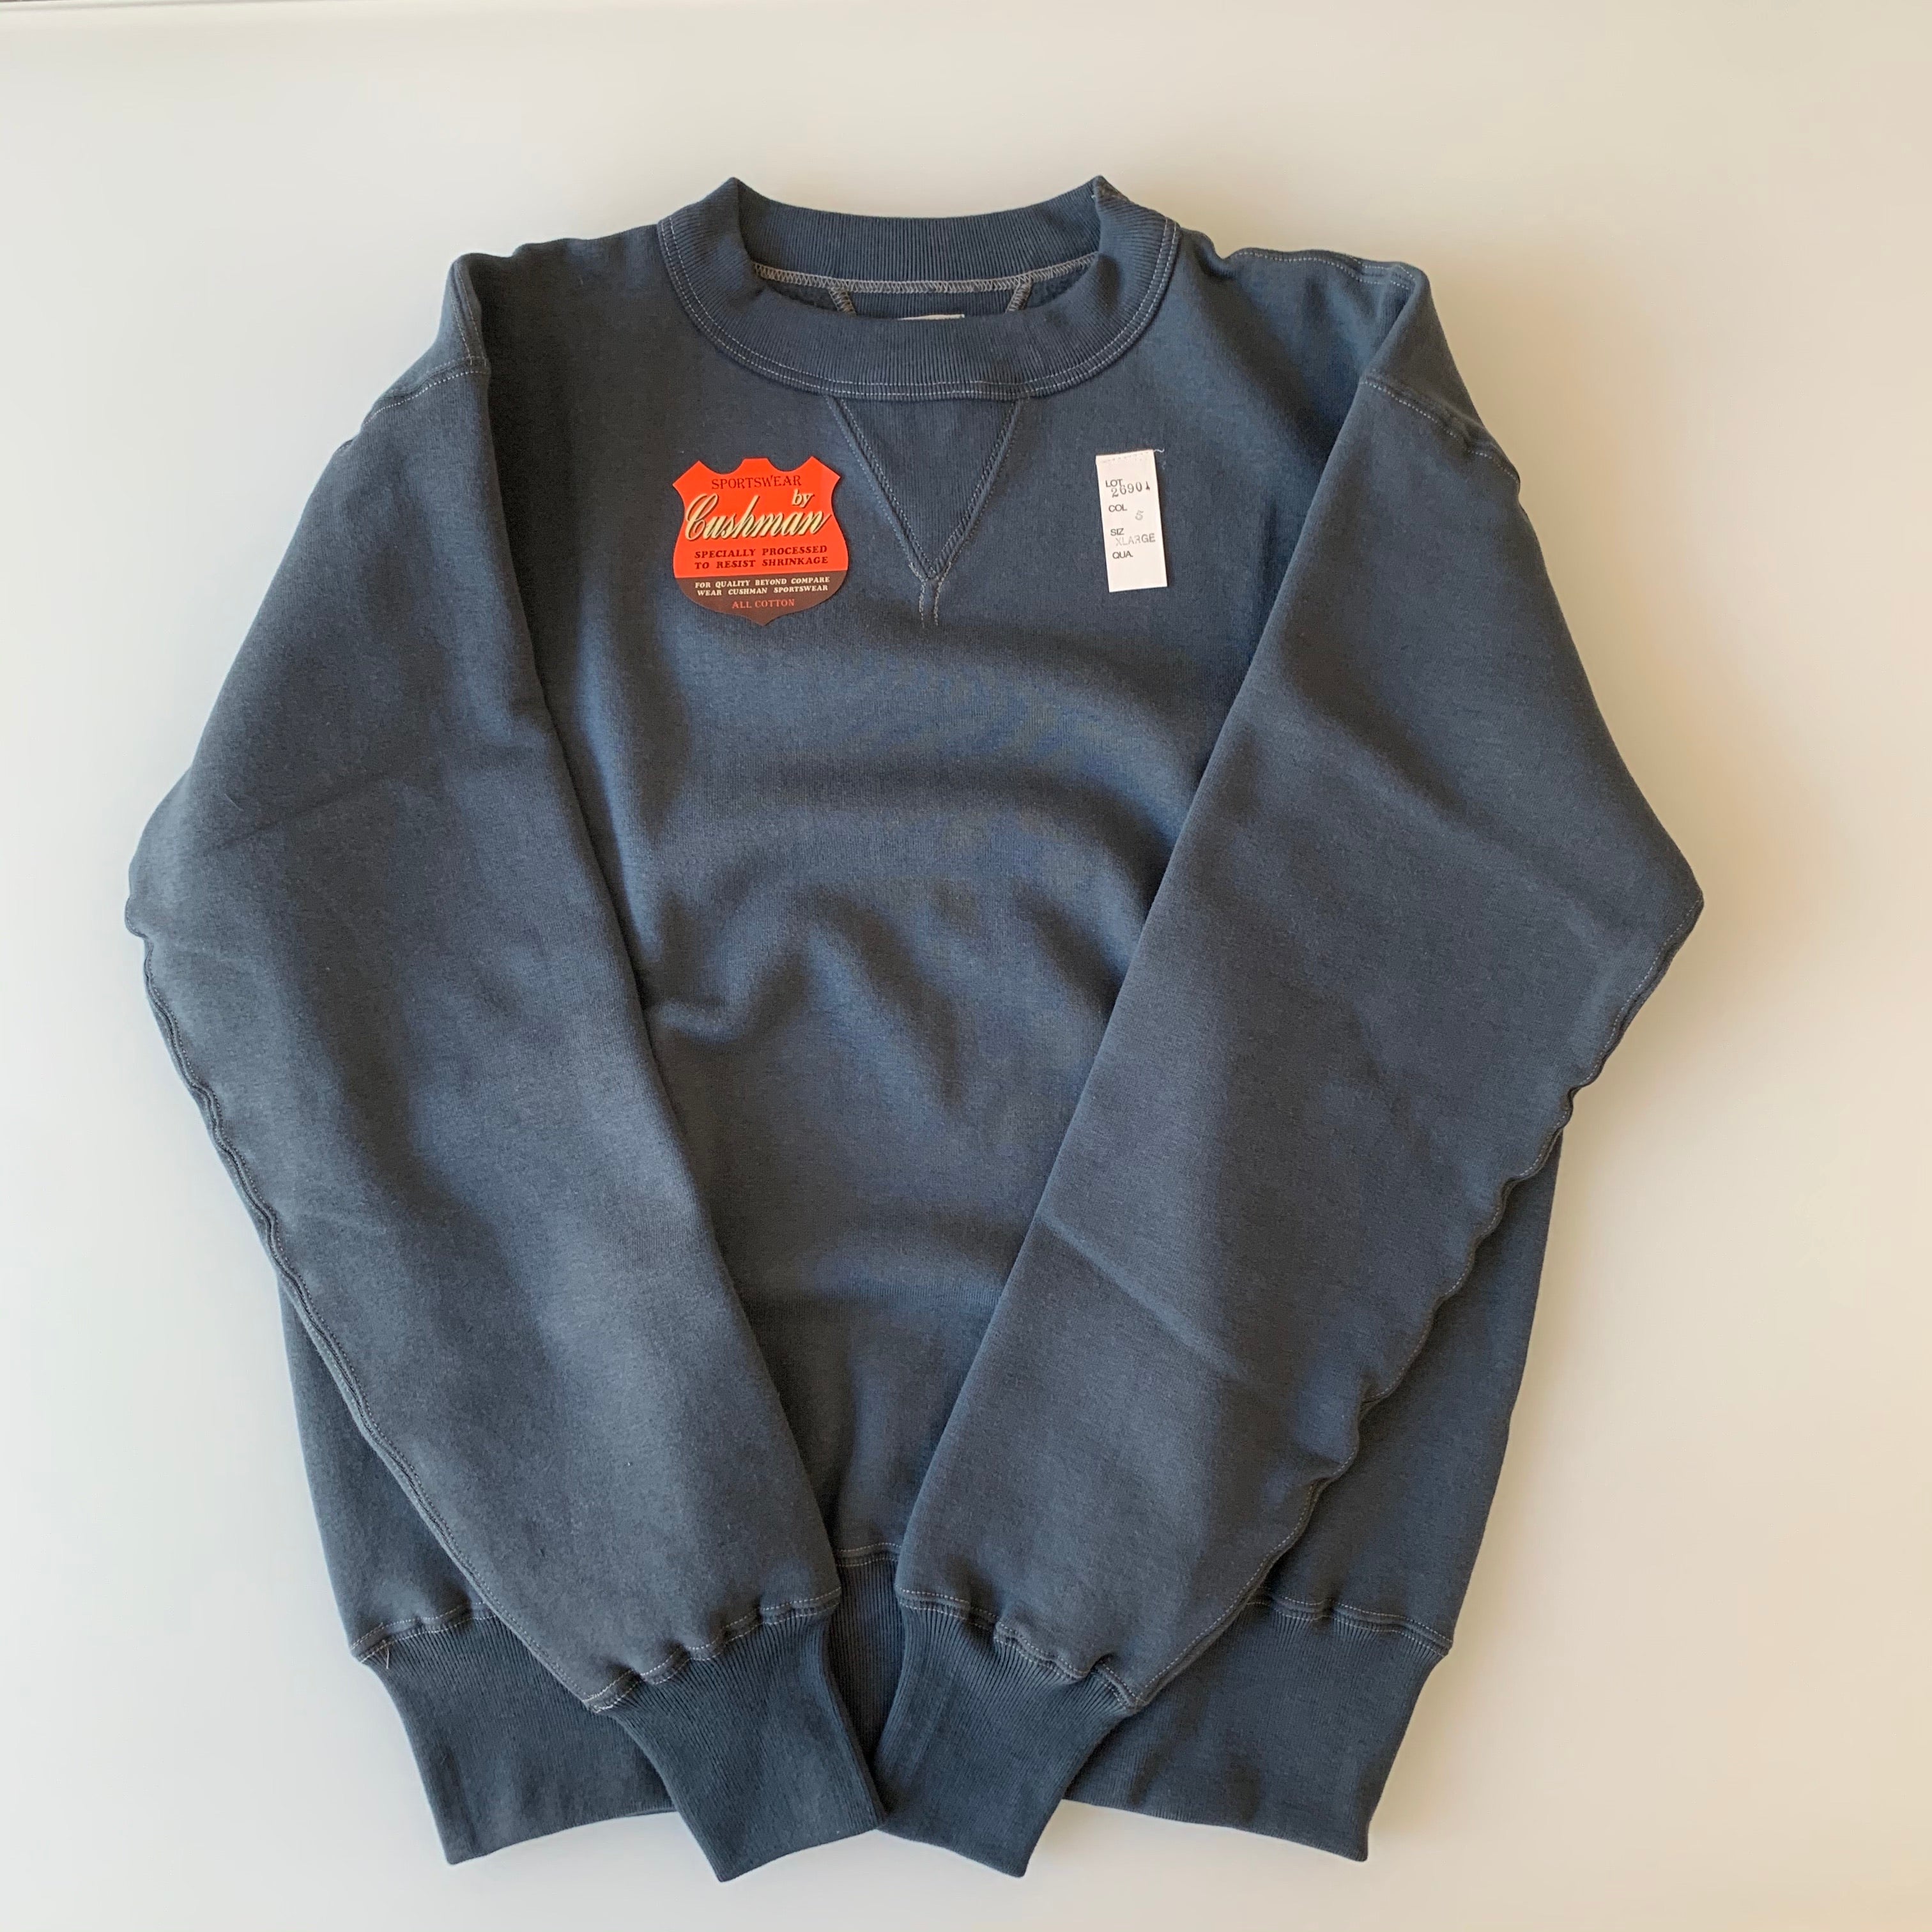 Tsuri-Ami Loopwheel Set-In-Sleeve Sweatshirt in Blueish Dark Grey